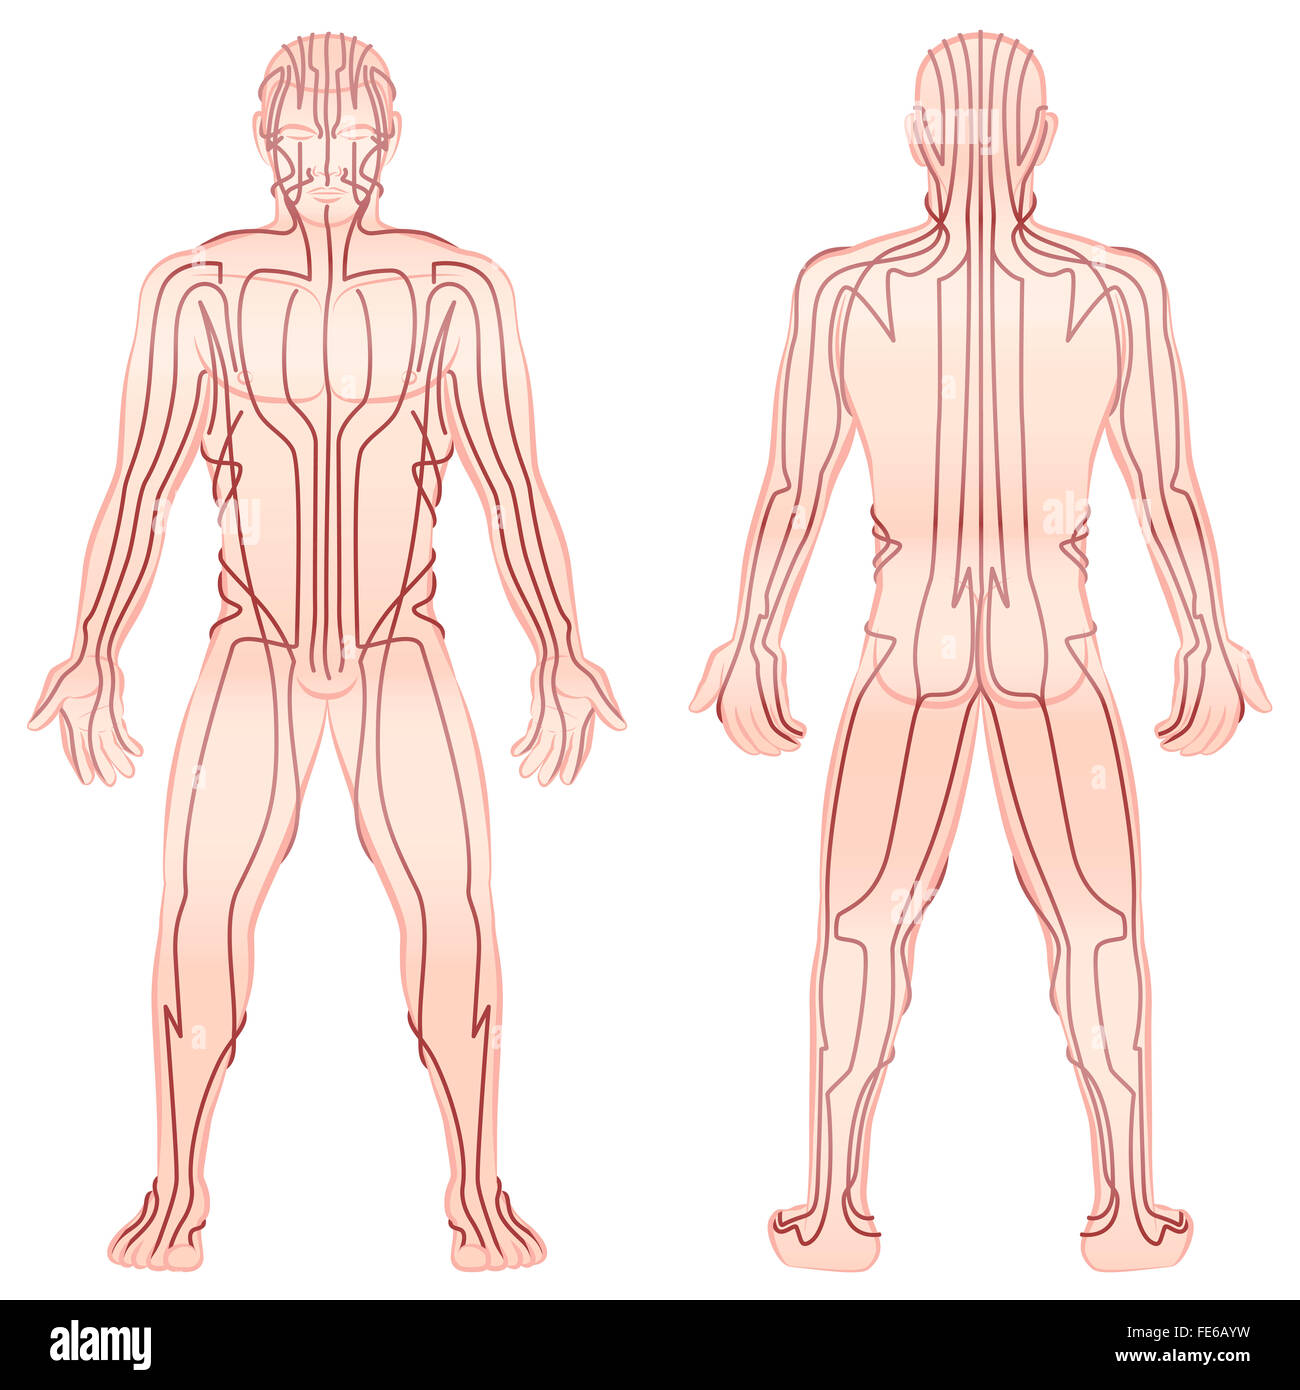 Méridiens - méditer l'homme avec les principaux méridiens d'acupuncture - Vue avant, vue arrière - Illustration sur fond blanc. Banque D'Images